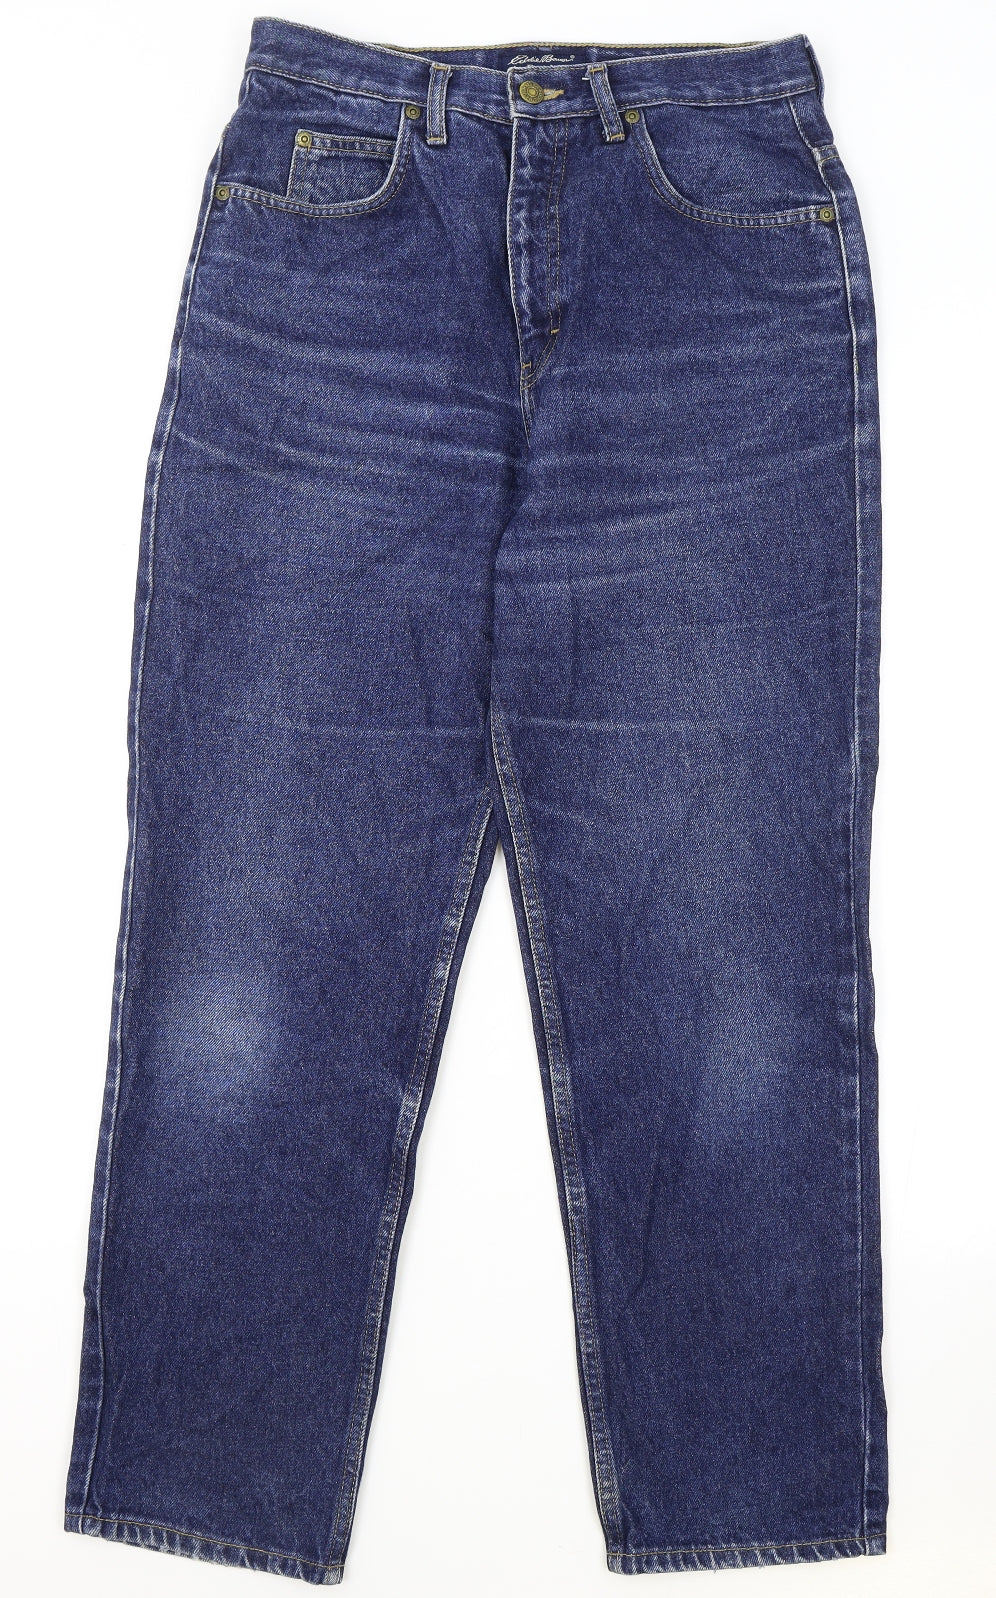 Eddie Bauer Mens Blue Cotton Straight Jeans Size 30 in L28 in Regular Zip